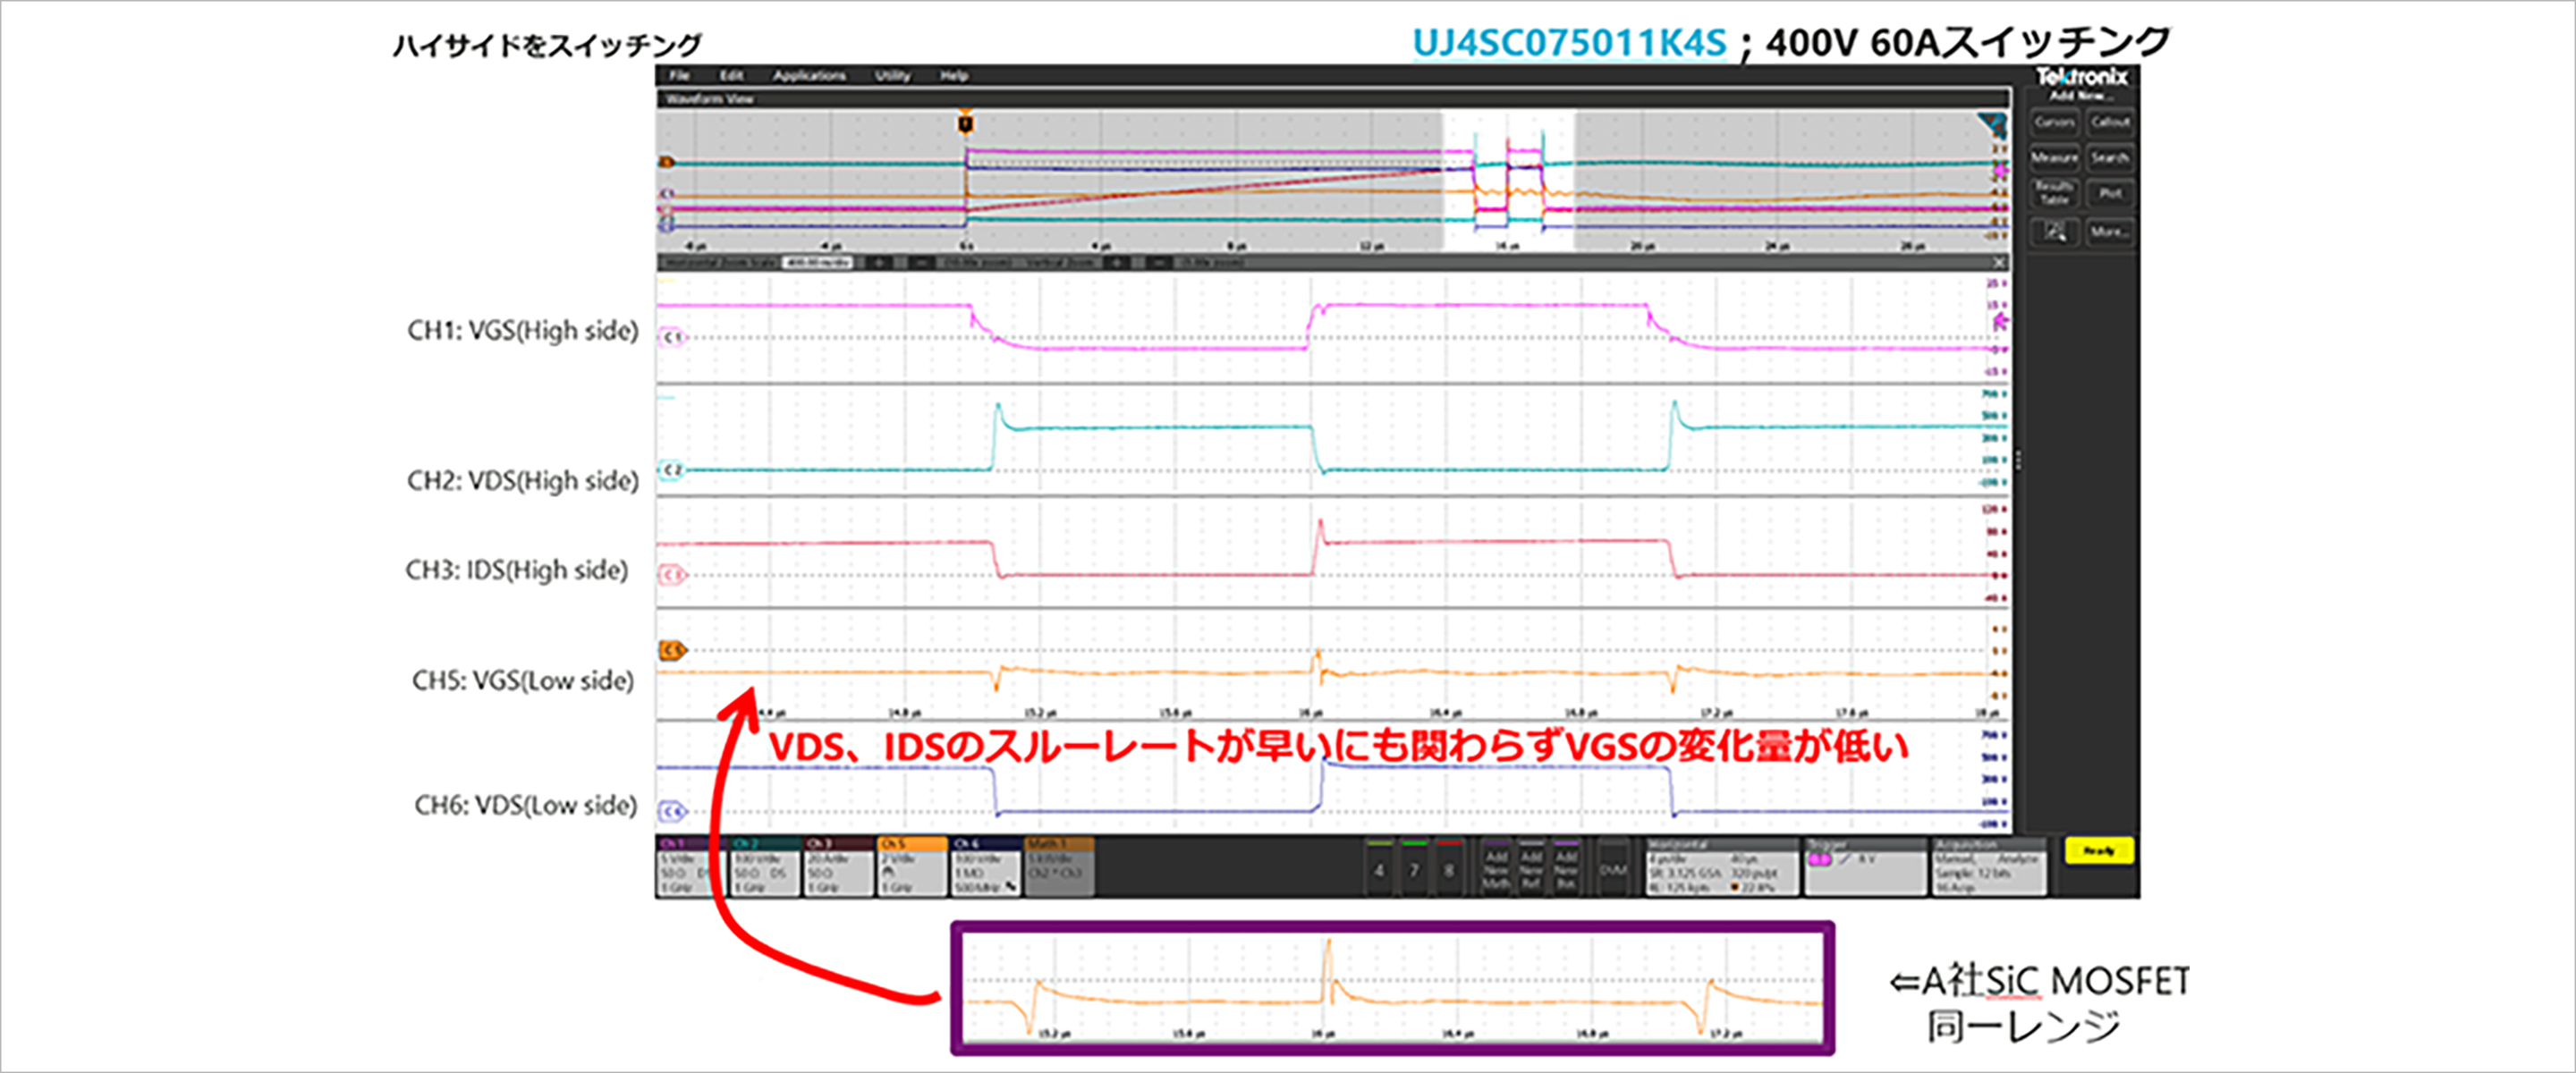 図8：Qorvo社 SiC FETでのVGSのサージ波形